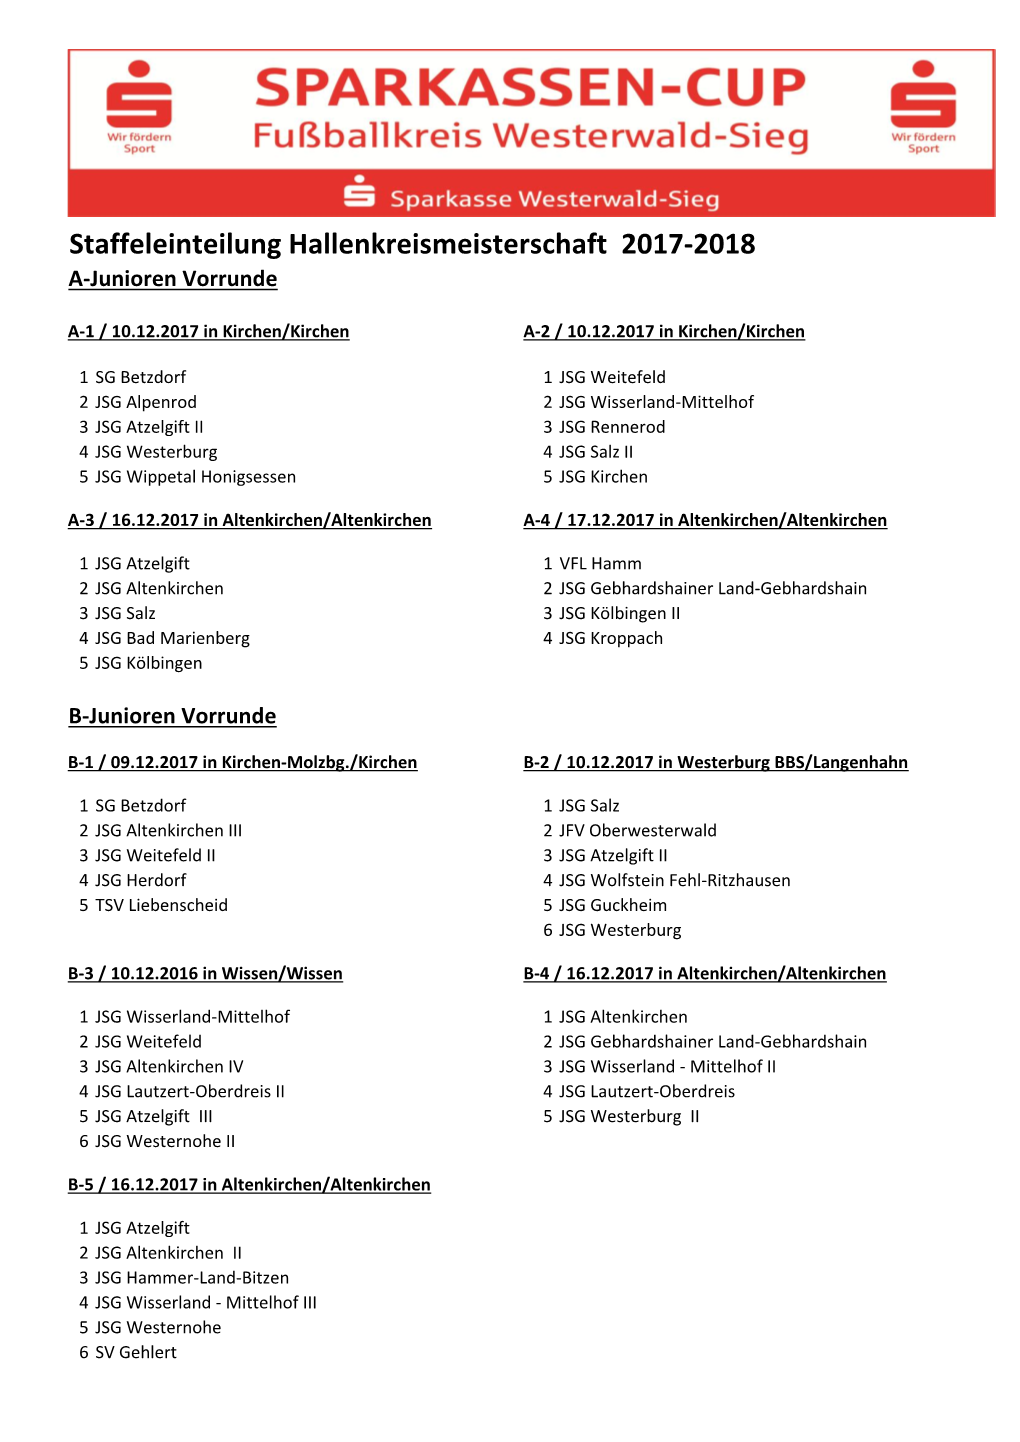 Staffeleinteilung Hallenkreismeisterschaft 2017-2018 A-Junioren Vorrunde